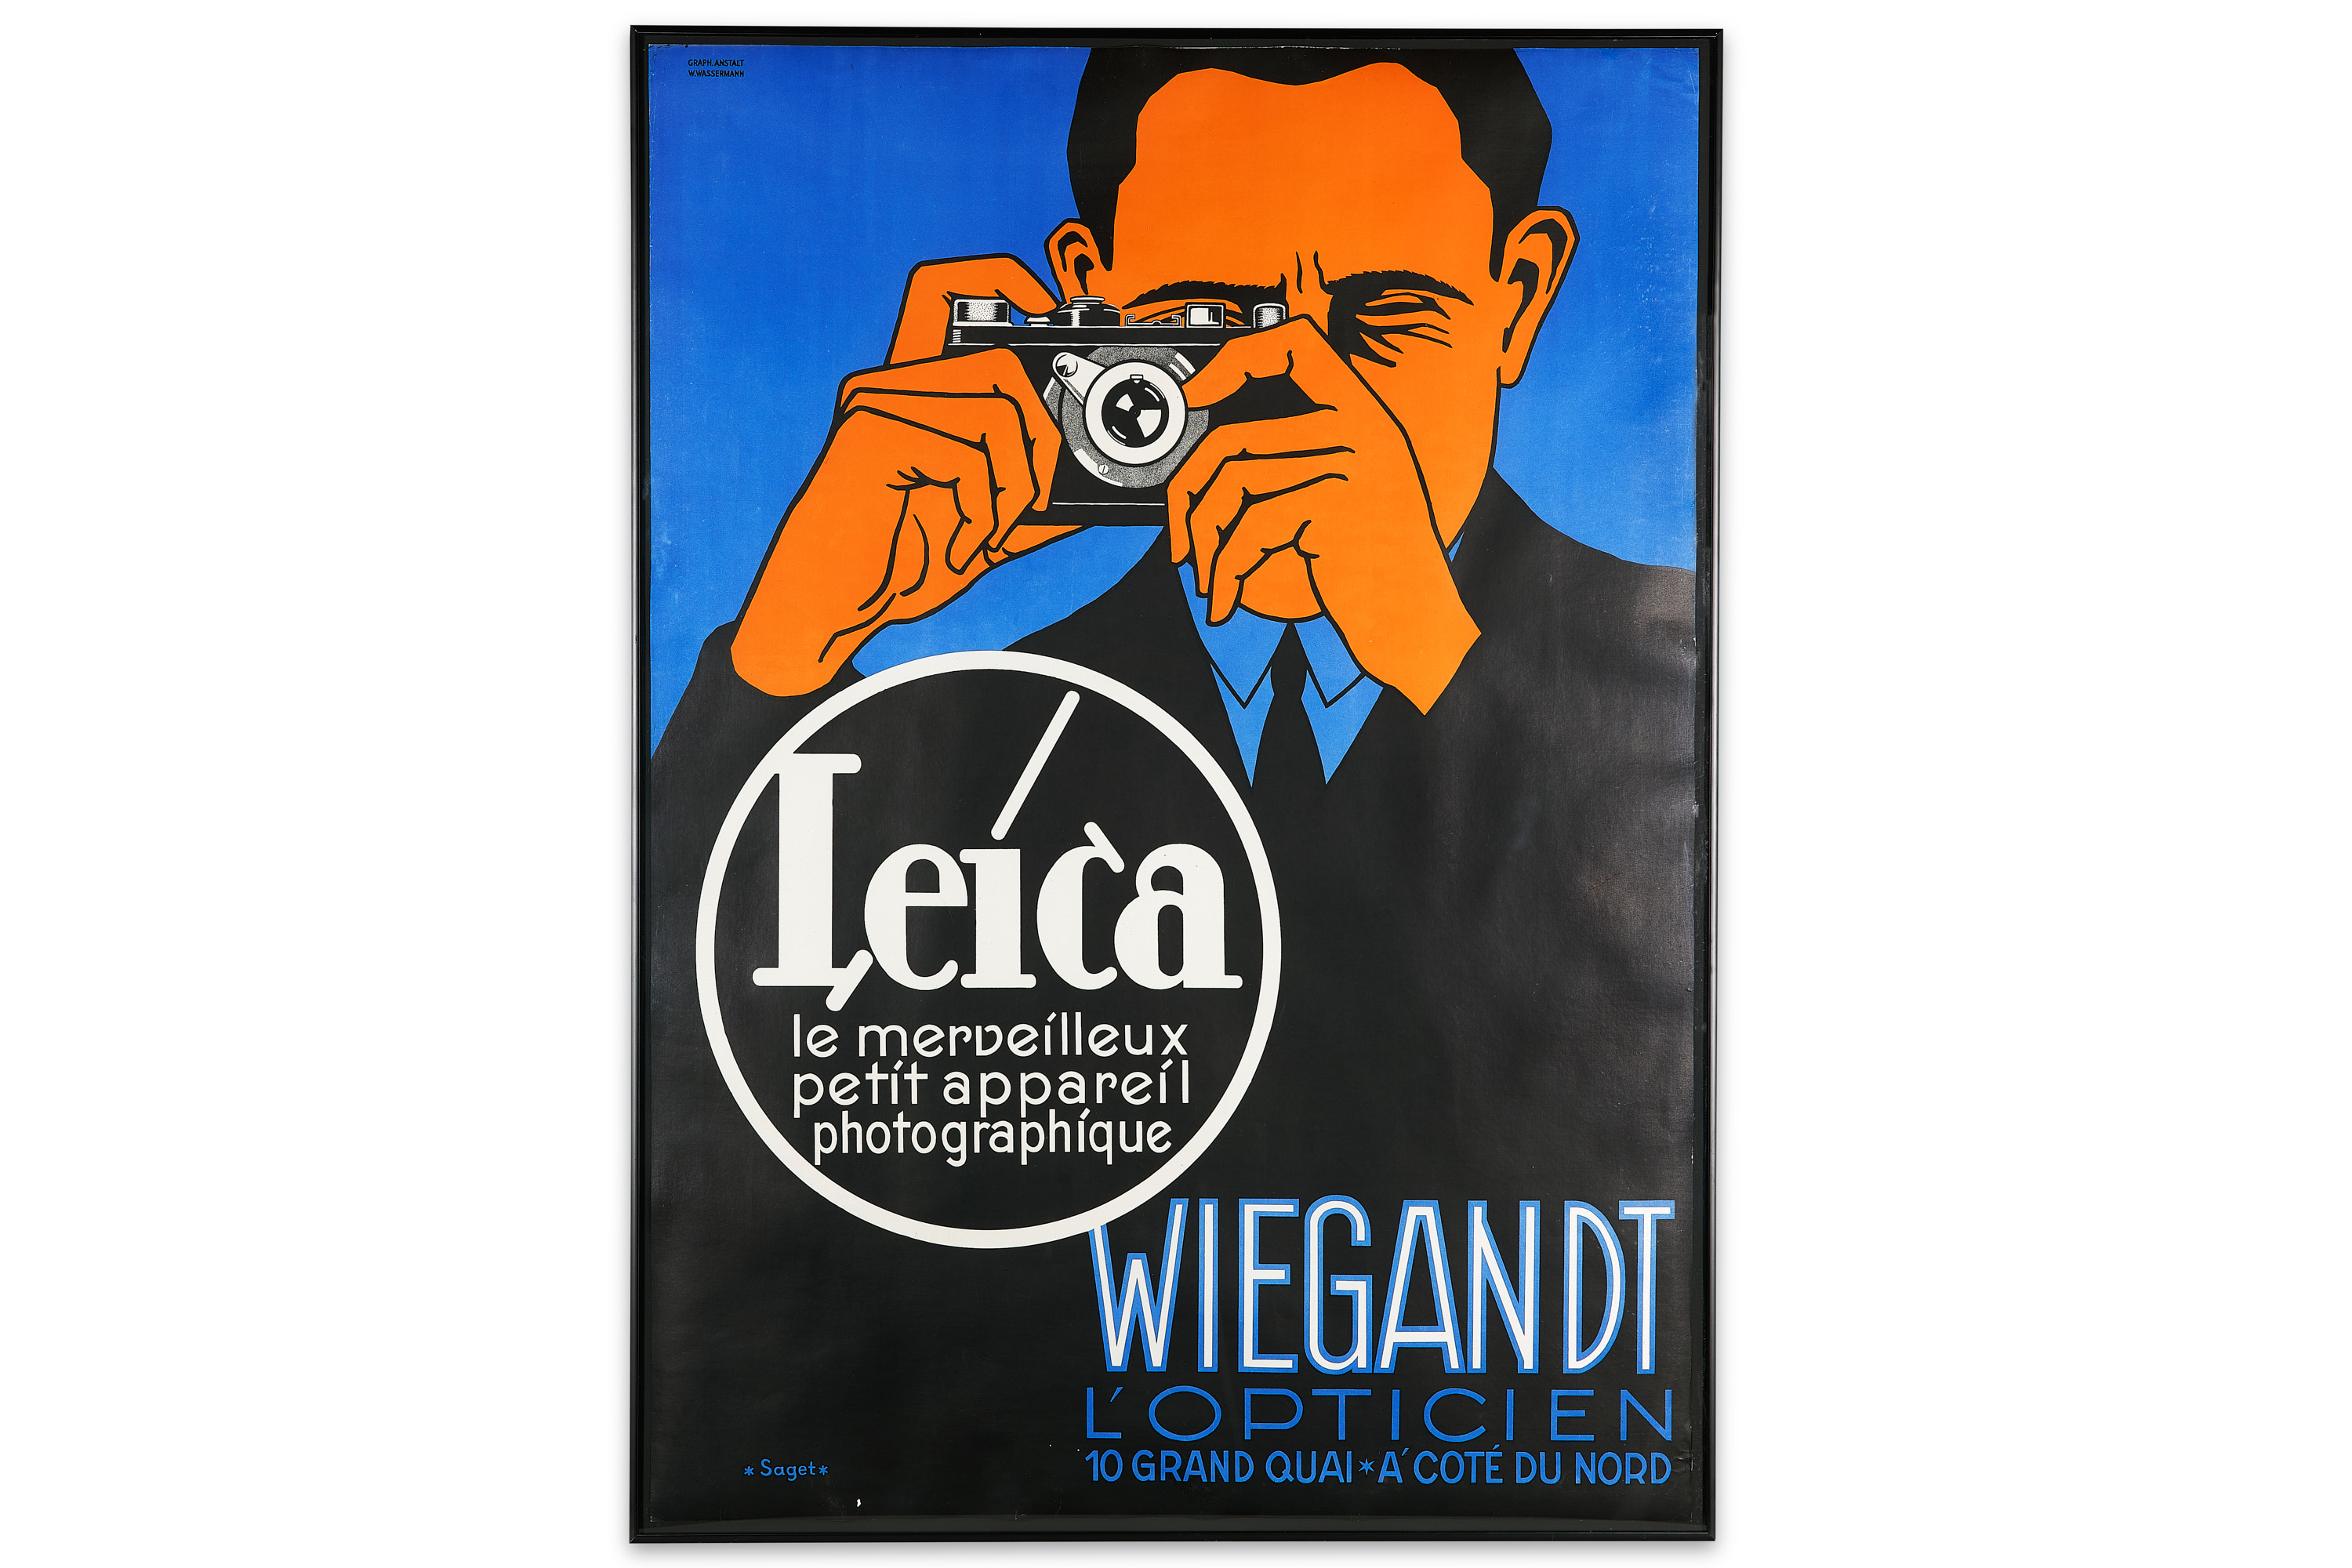 Saget Leica Poster for Wiegandt L'Opticien *